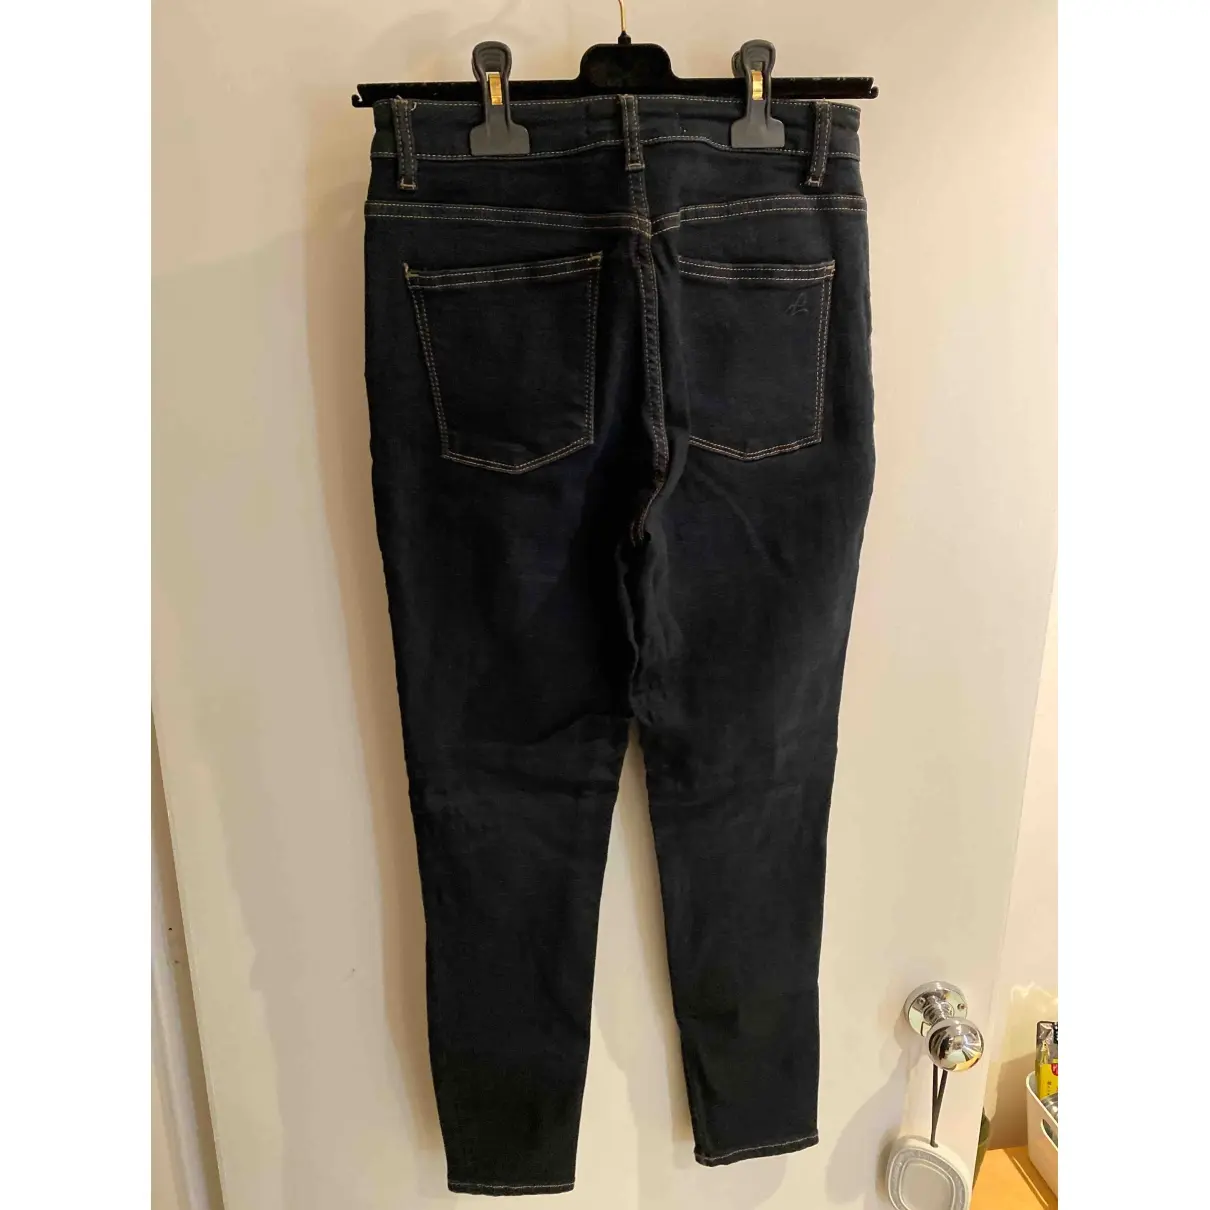 Buy DL1961 Slim pants online